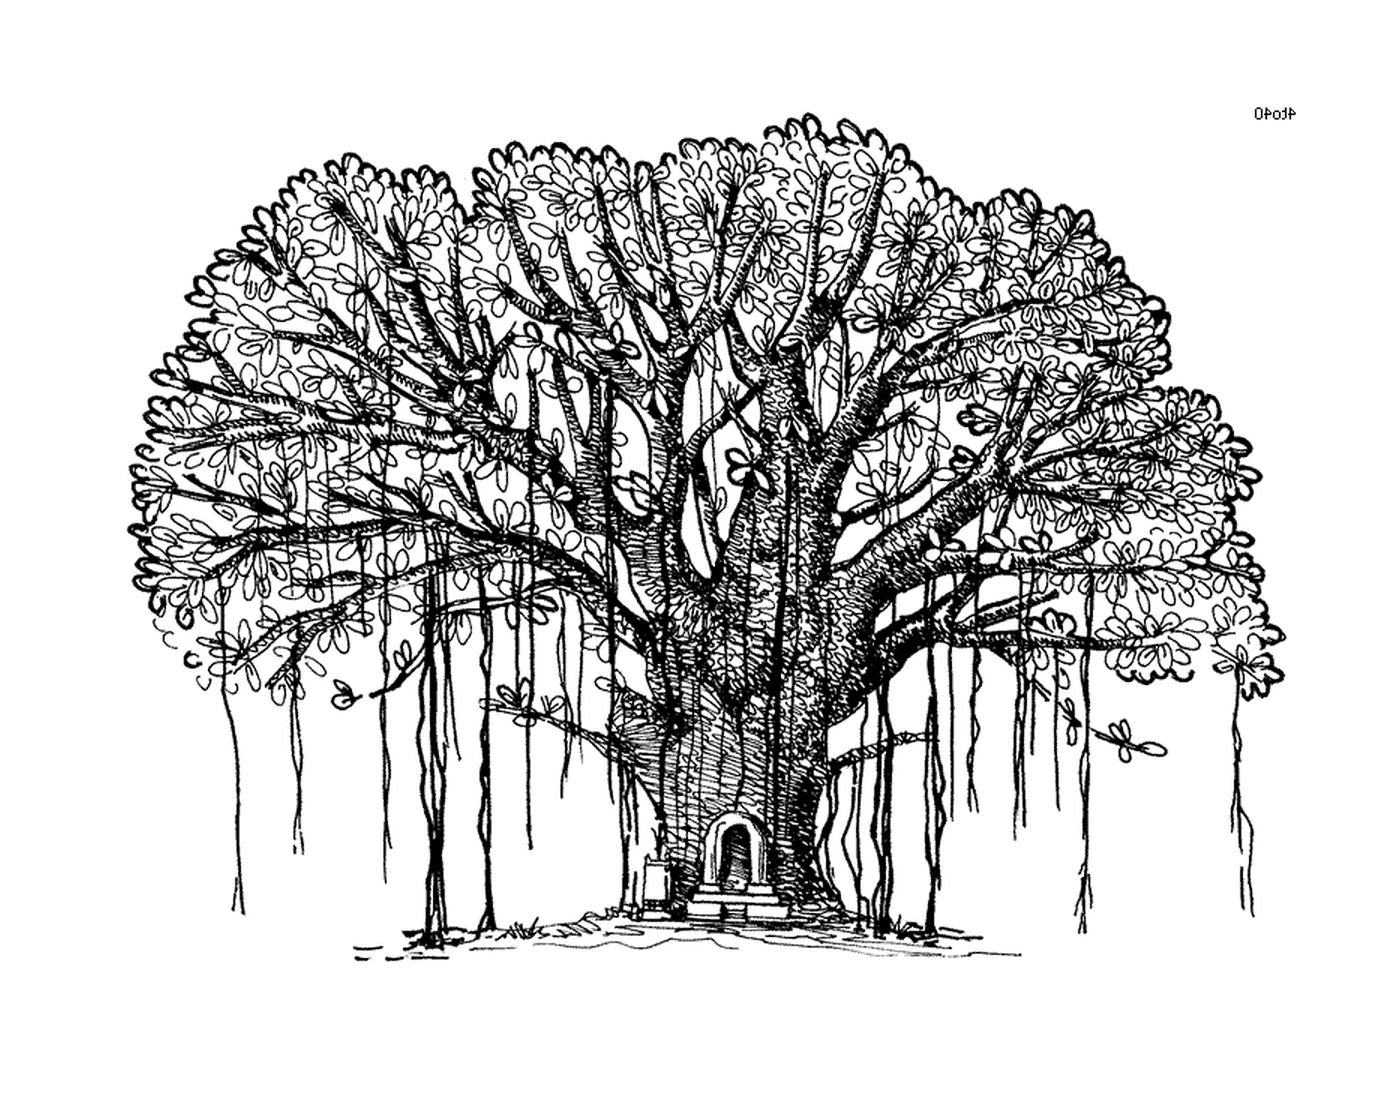  Чернила, большое дерево с скамейкой посередине 